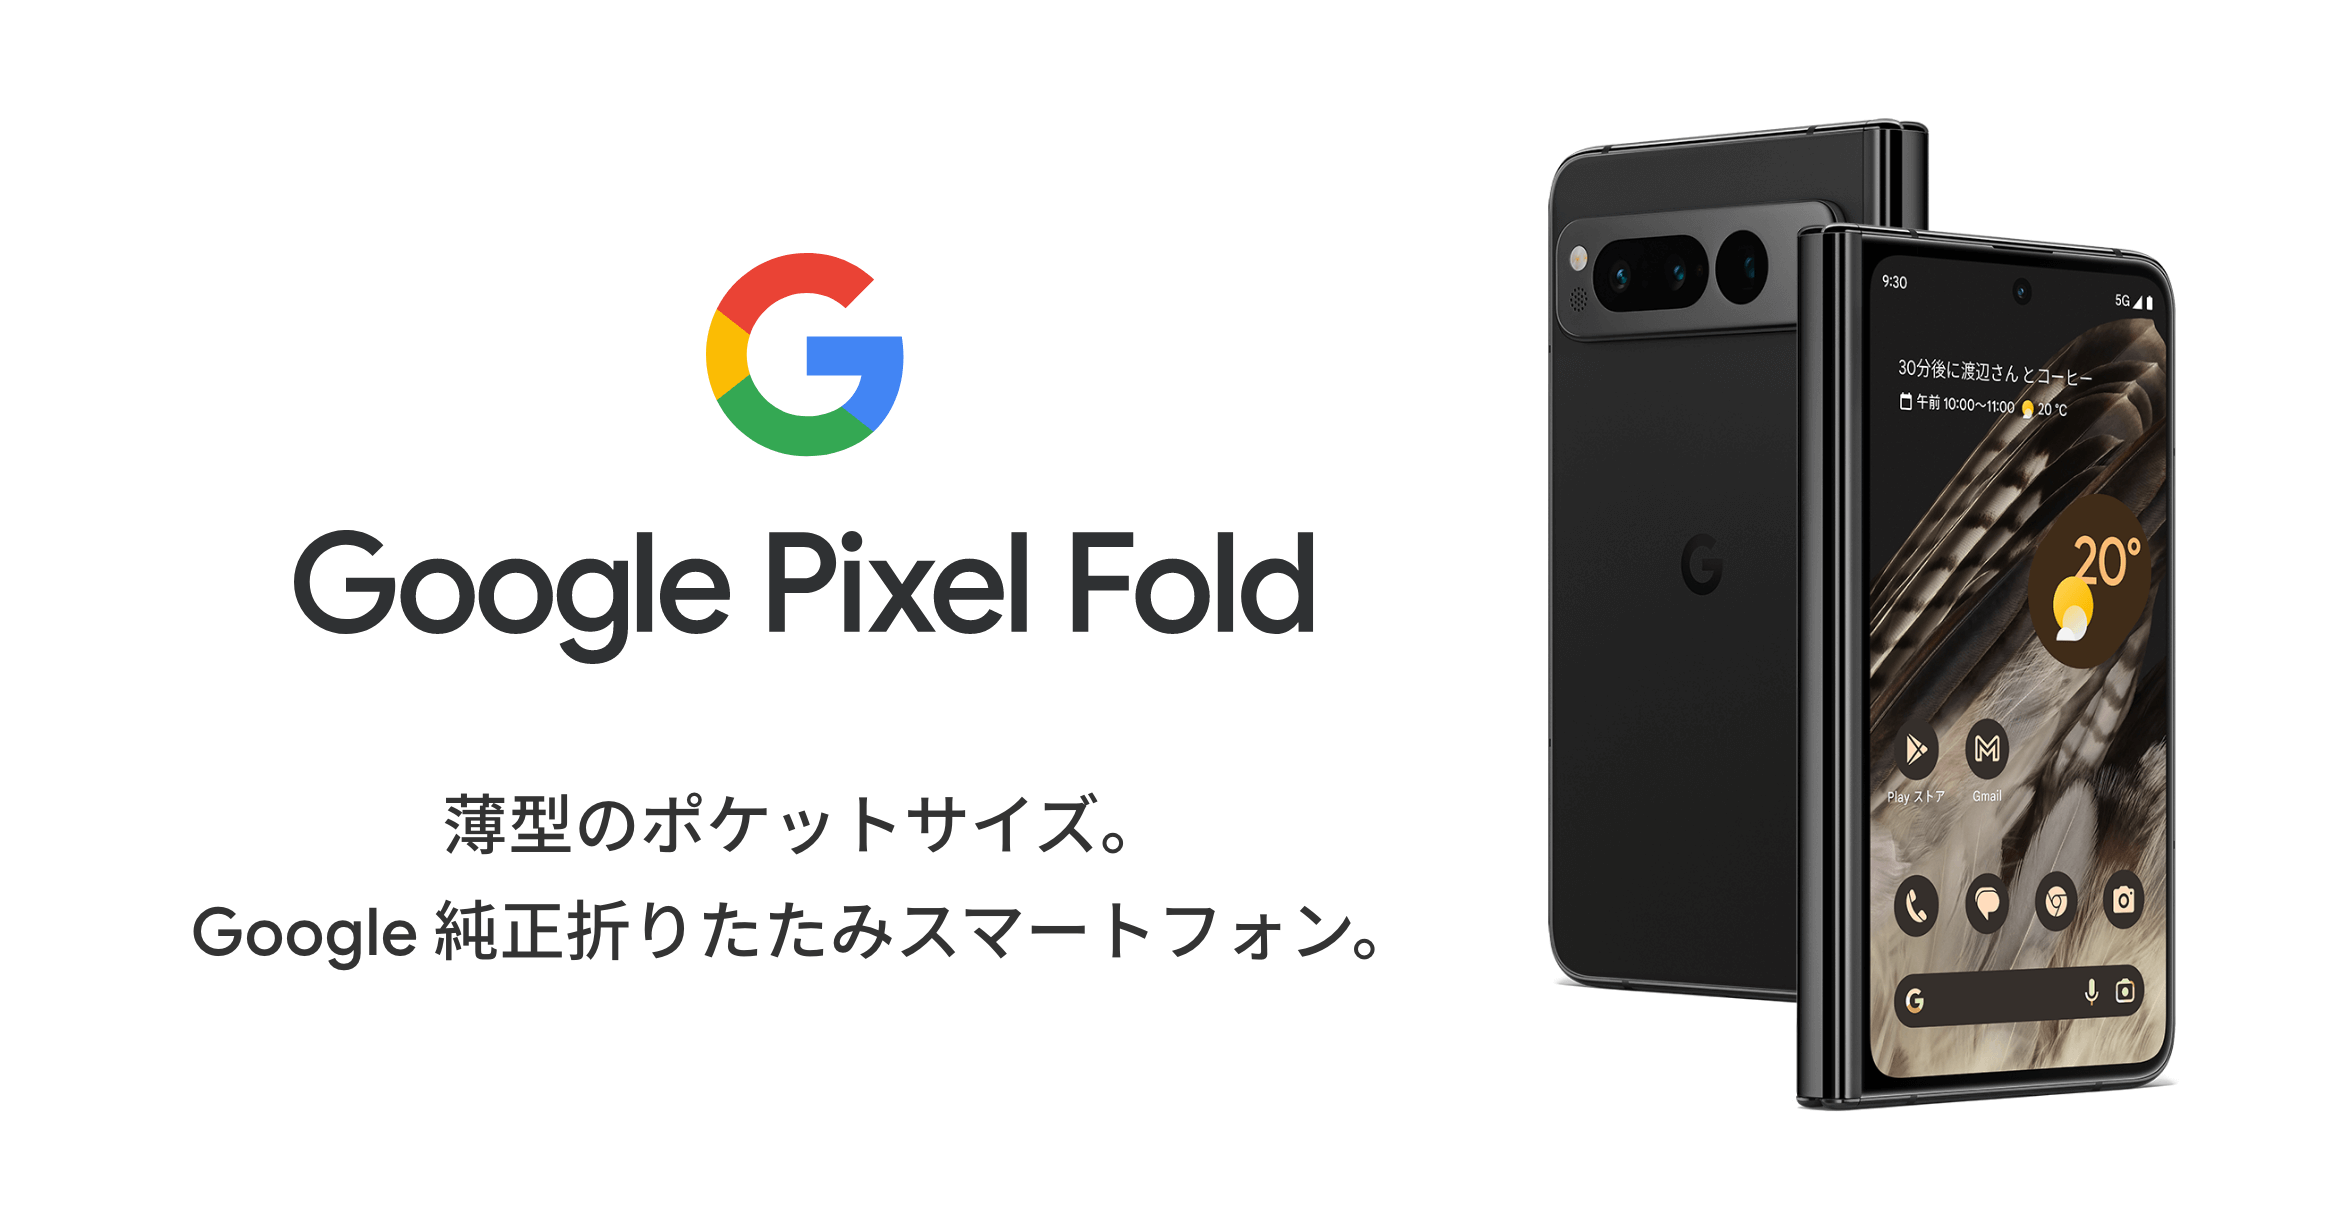 Google Pixel Fold　薄型のポケットサイズ。Google 純正折りたたみスマートフォン。